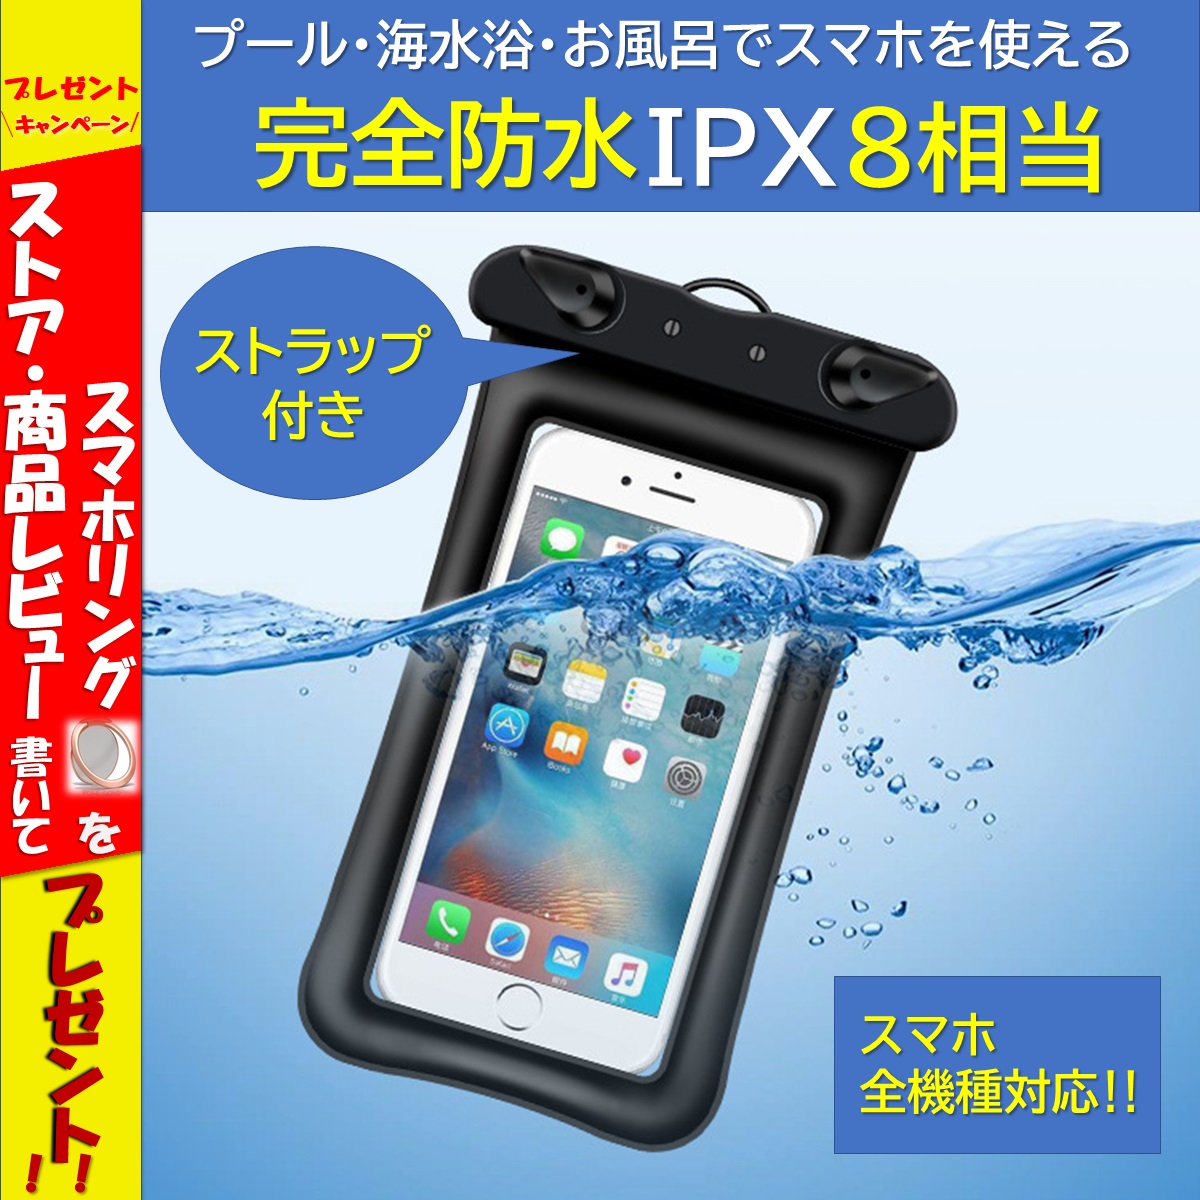 スマホ 防水ケース 海 お風呂 iPhone フィッシング 海水浴 IPX8 6.5インチ以下機種対応 ストラップ付  :sma-bousui001:ニコニコハウス 通販 